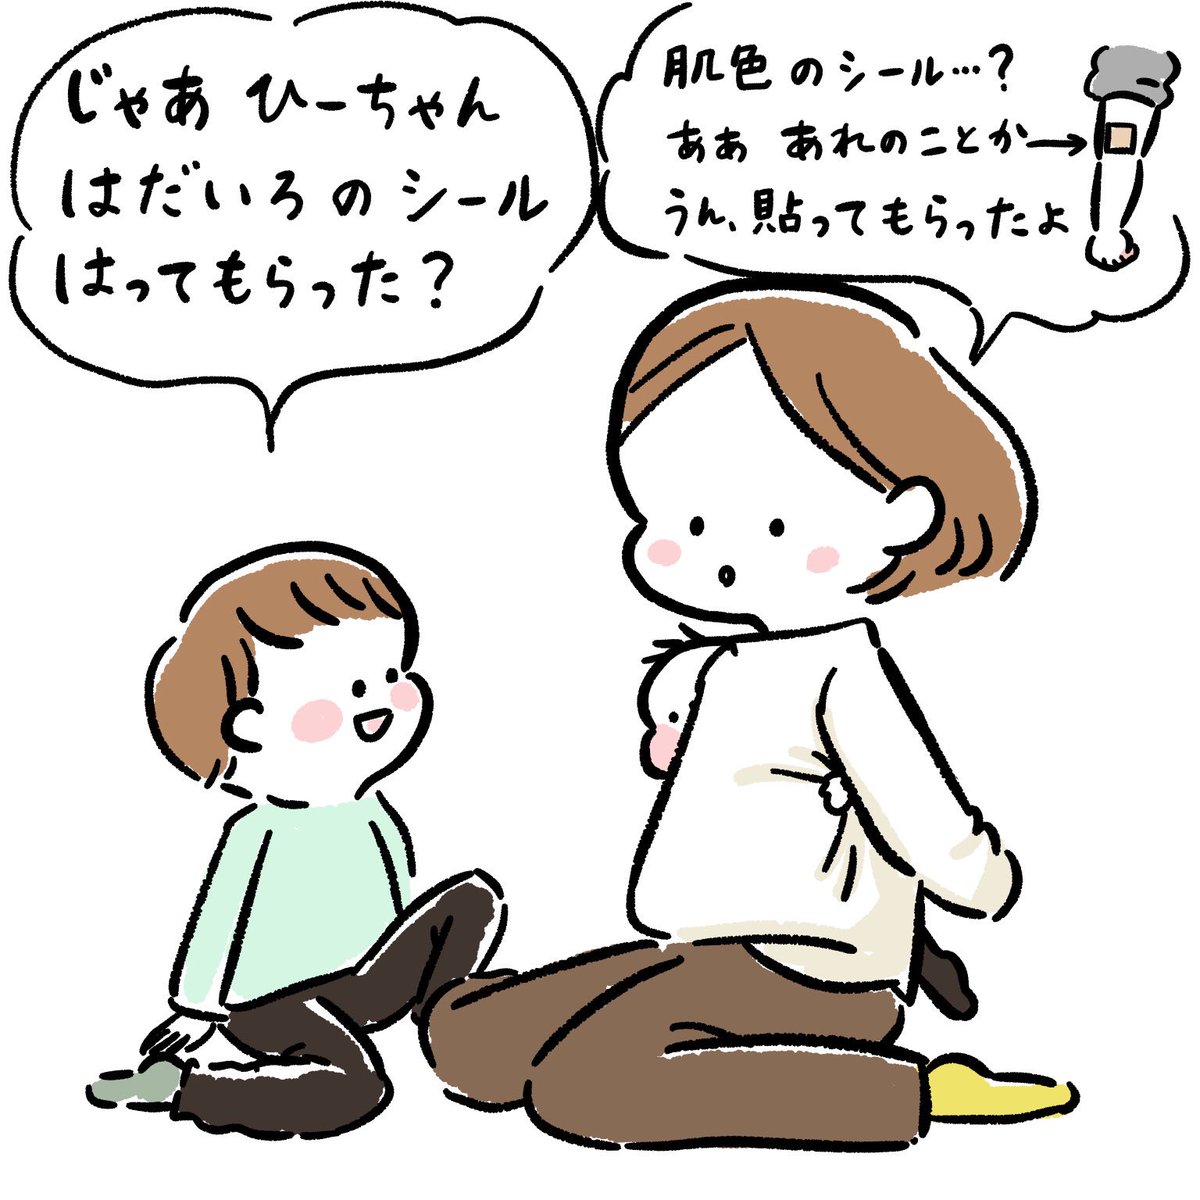 ひーちゃんと予防接種(5/5)
兄の愛編 